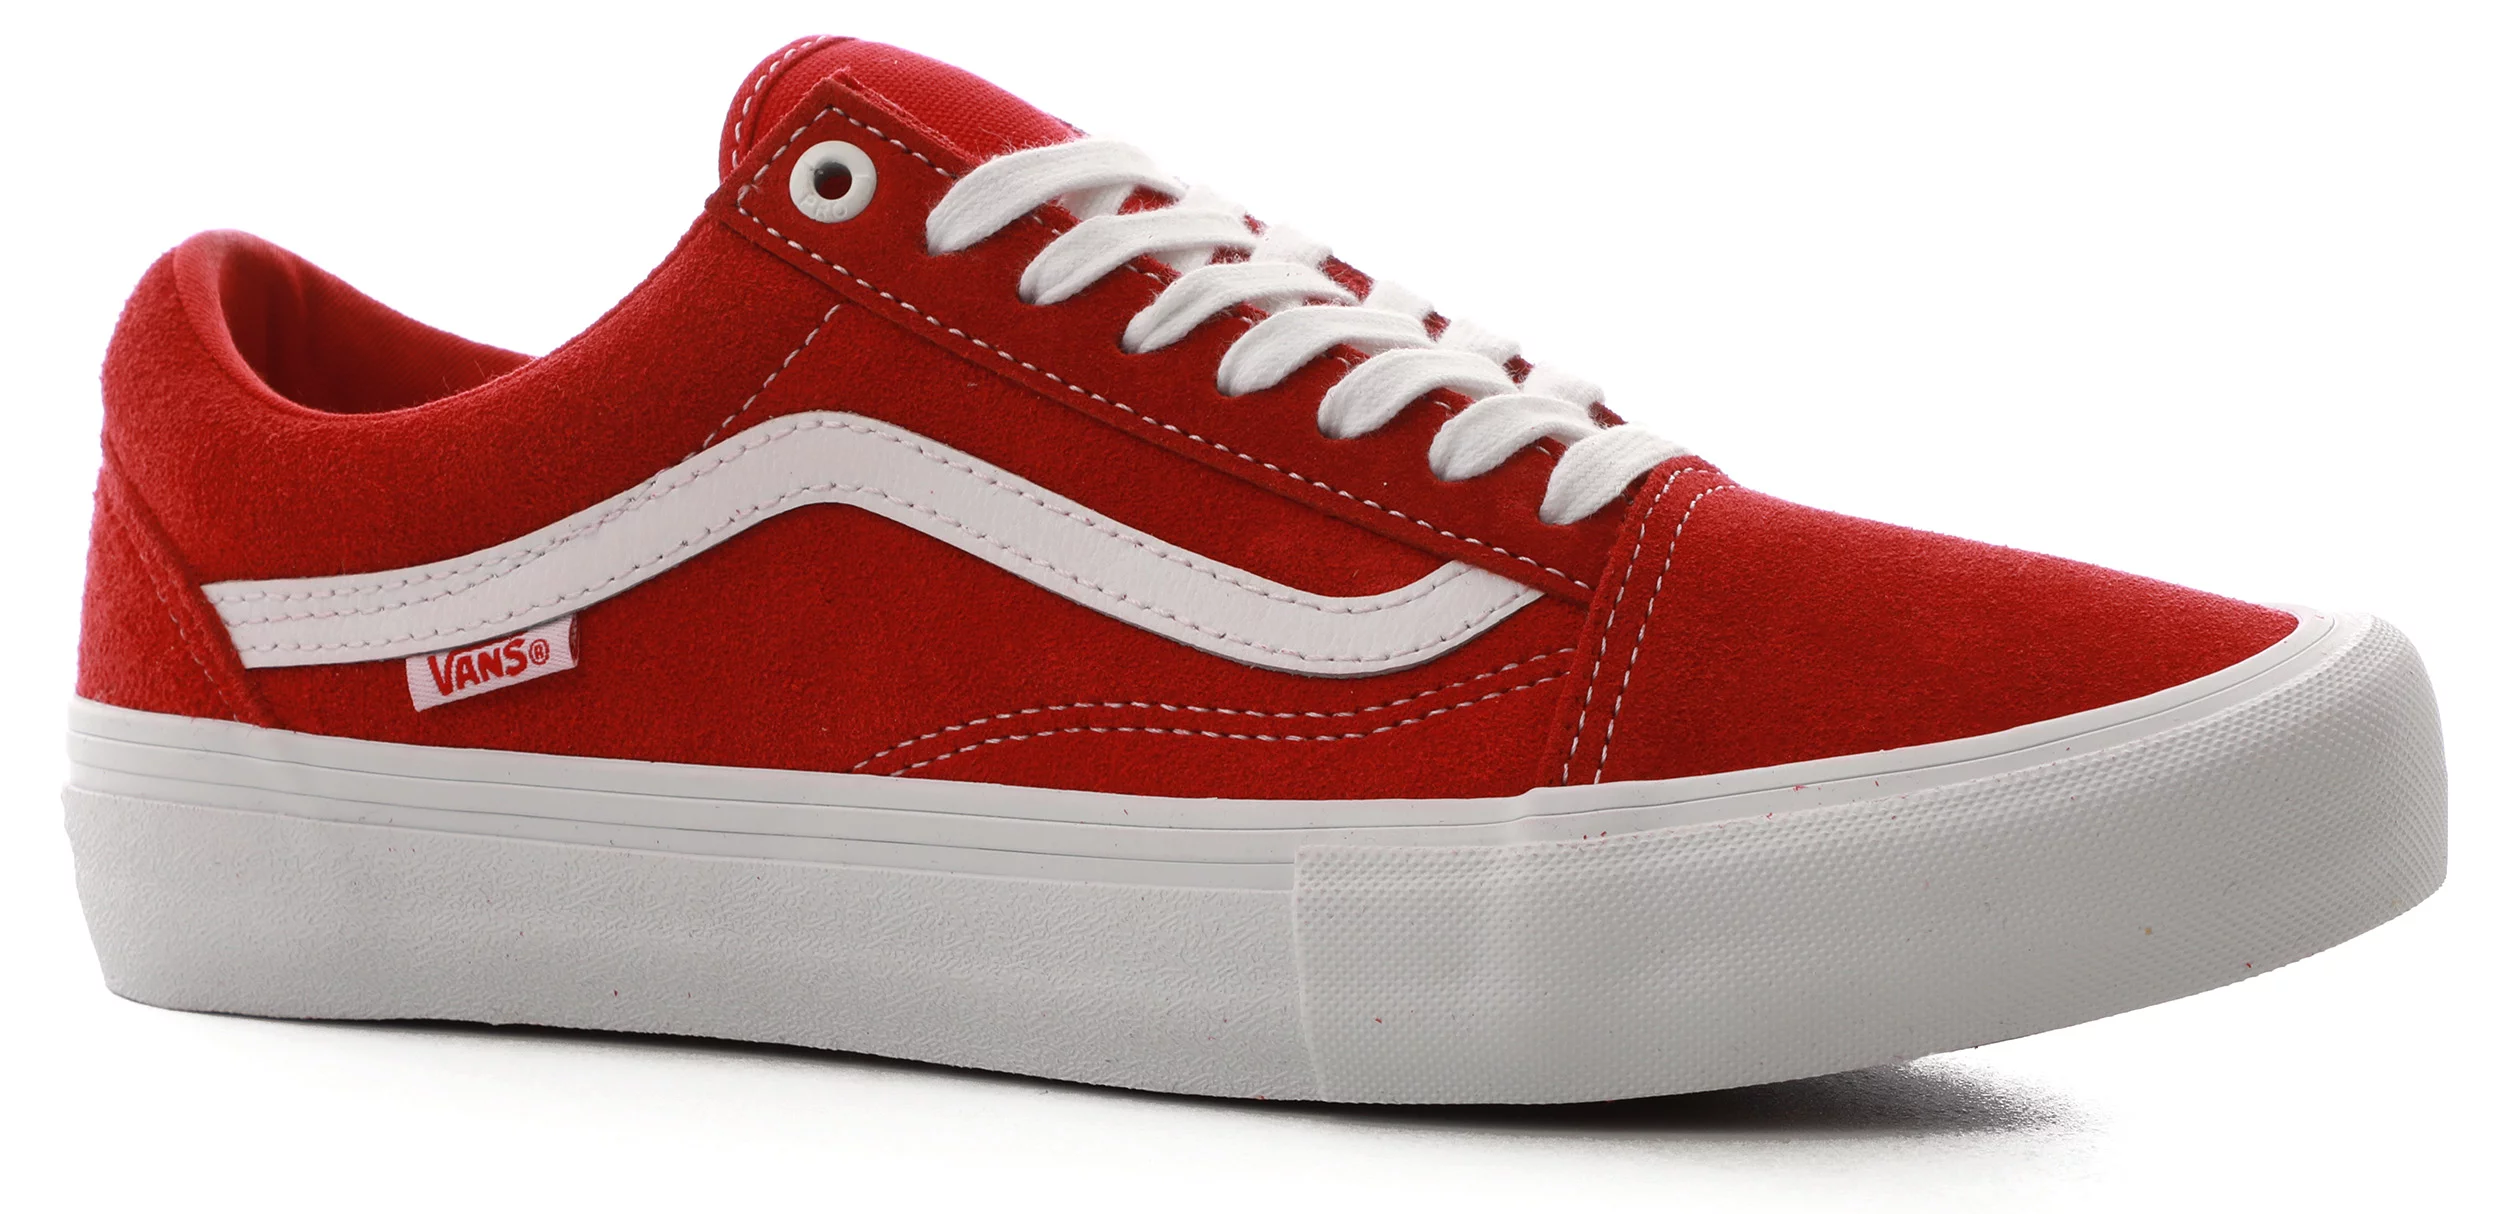 Dan thema steenkool Vans Old Skool Pro Skate Shoes - (suede) red/white | Tactics